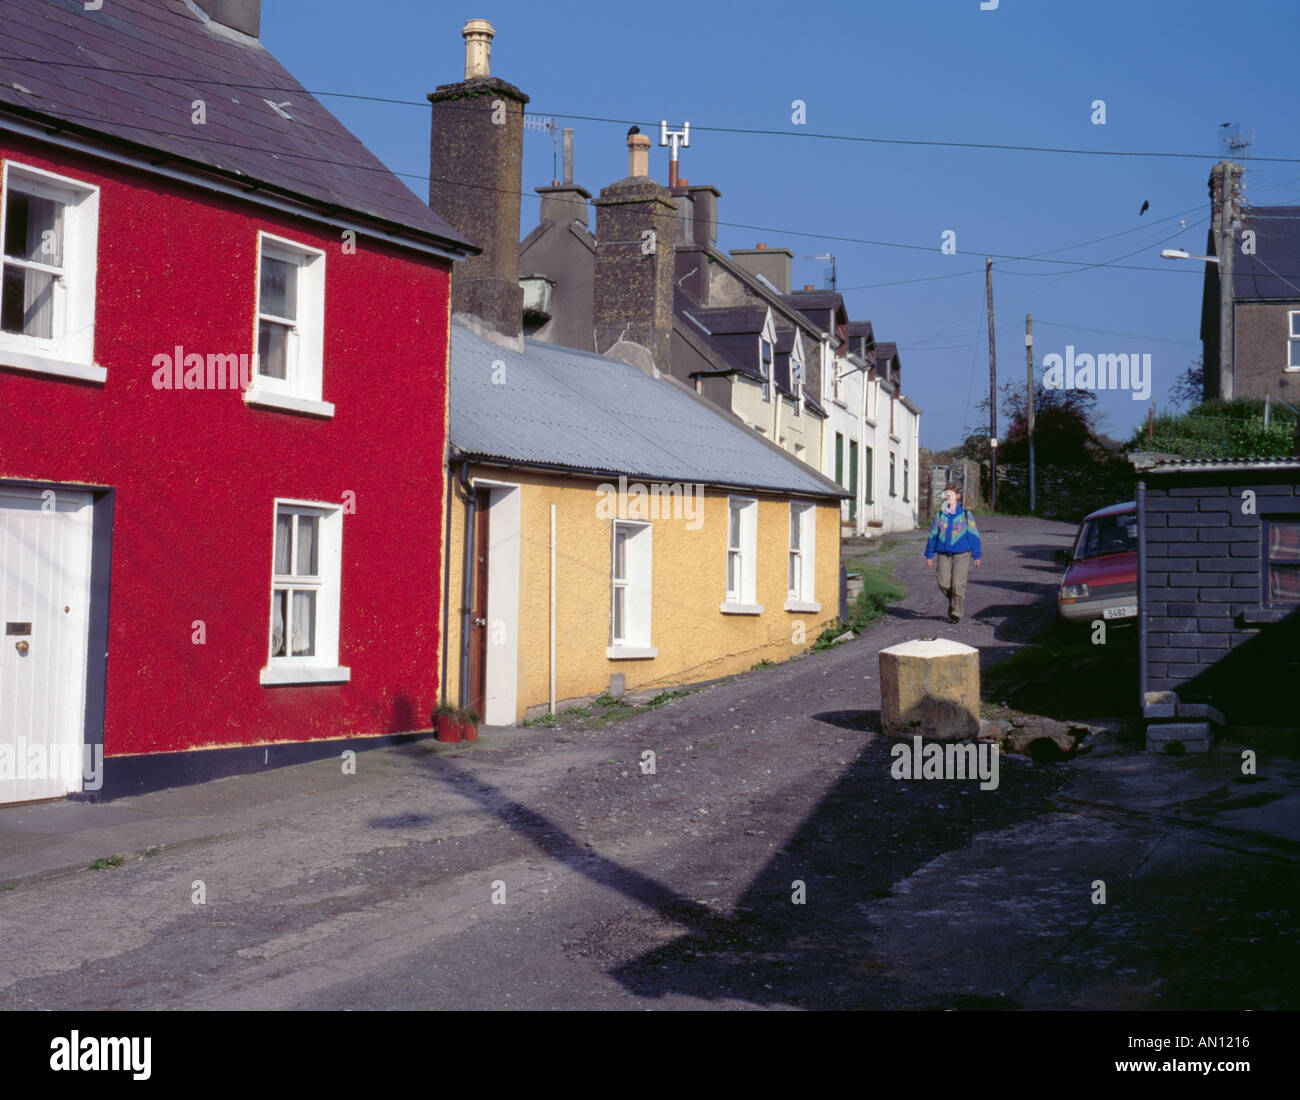 Cottages en pierre peint de couleurs vives, pittoresque, village de Dingle, péninsule de Dingle, comté de Kerry, Irlande (Irlande). Banque D'Images